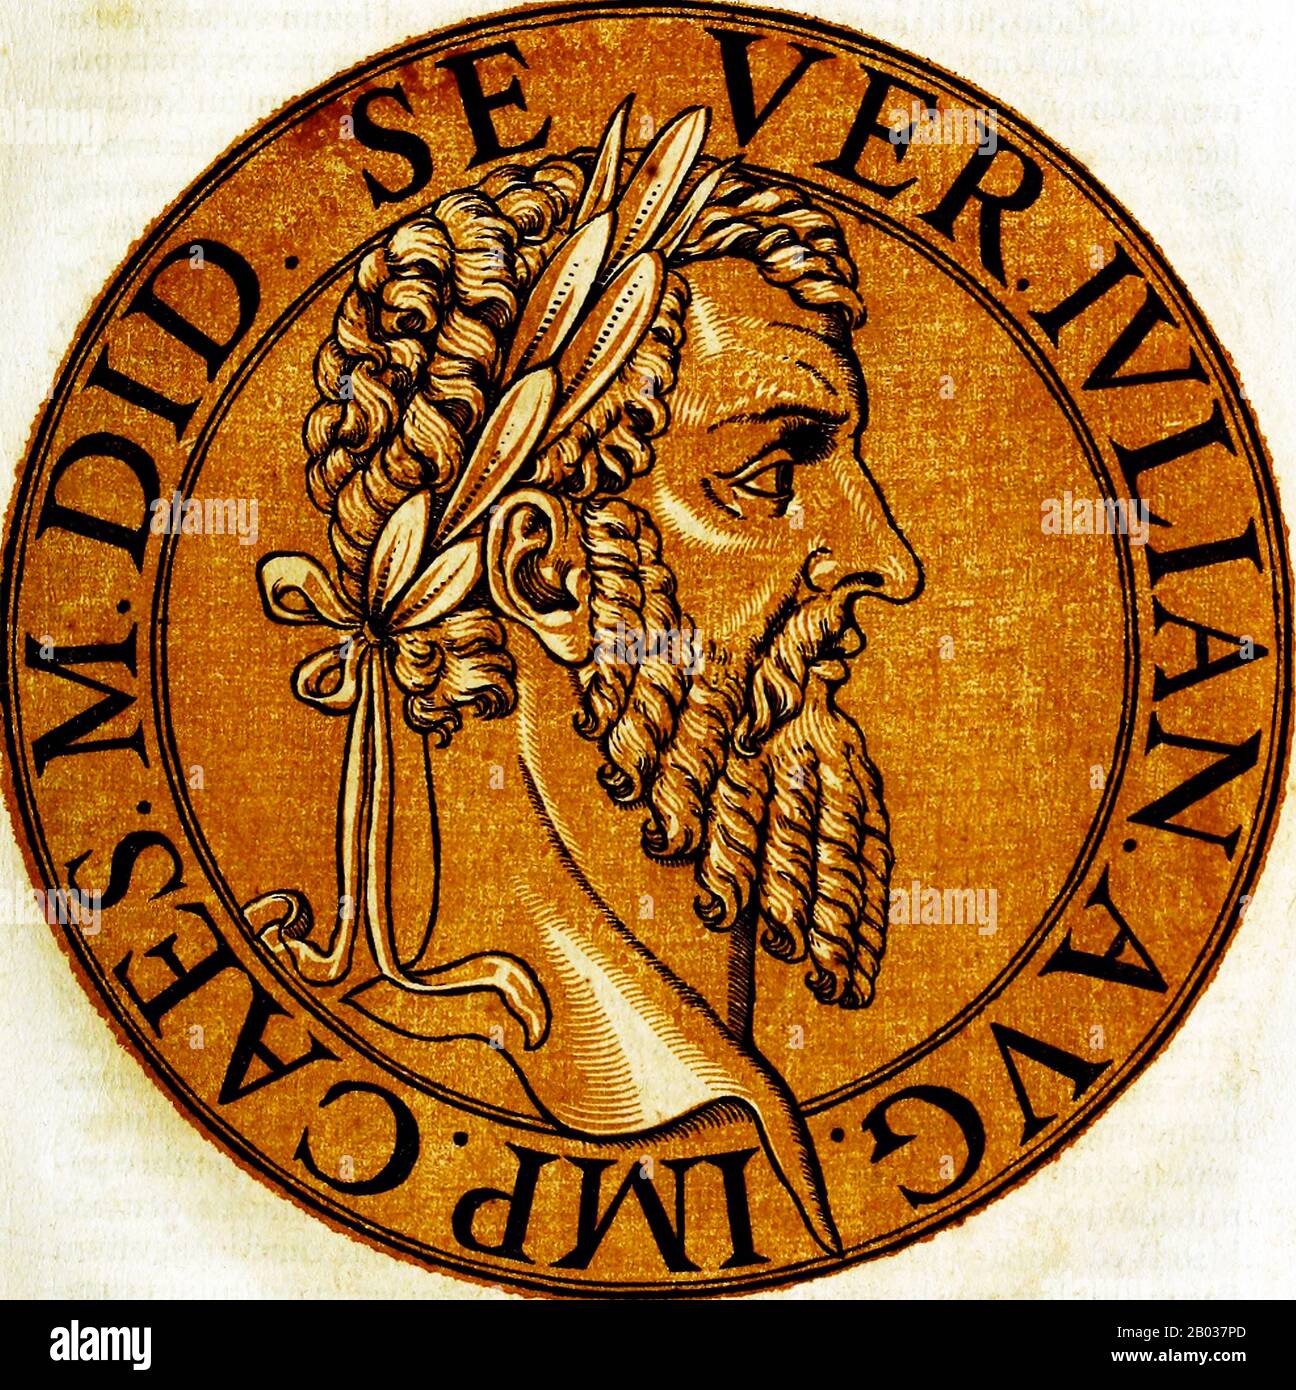 Didius Julianus (133/137-193 CE) wurde von Domitia Lucilla, der Mutter von Kaiser Marcus Aurelius, erhoben und war für öffentliche Ämter und Unterscheidung gepflegt. Er diente in der römischen Armee und wurde 175 CE für seine Erfolge gegen die Germanenstämme zum Konsulat neben Pertinax erhoben. Nachdem die Praetorian Garde Pertinax im März 193 CE ermordet hatte, setzten sie den Kaiserthron zum bieten auf, der bereit war, ihn zu verkaufen, an wen es am meisten zahlen konnte. Julianus gewann den Bieterkrieg und wurde zum Cäsar und Kaiser erklärt, wobei der Senat die Erklärung unter militärischer Bedrohung formalisierte. Seine Kontroversen Stockfoto